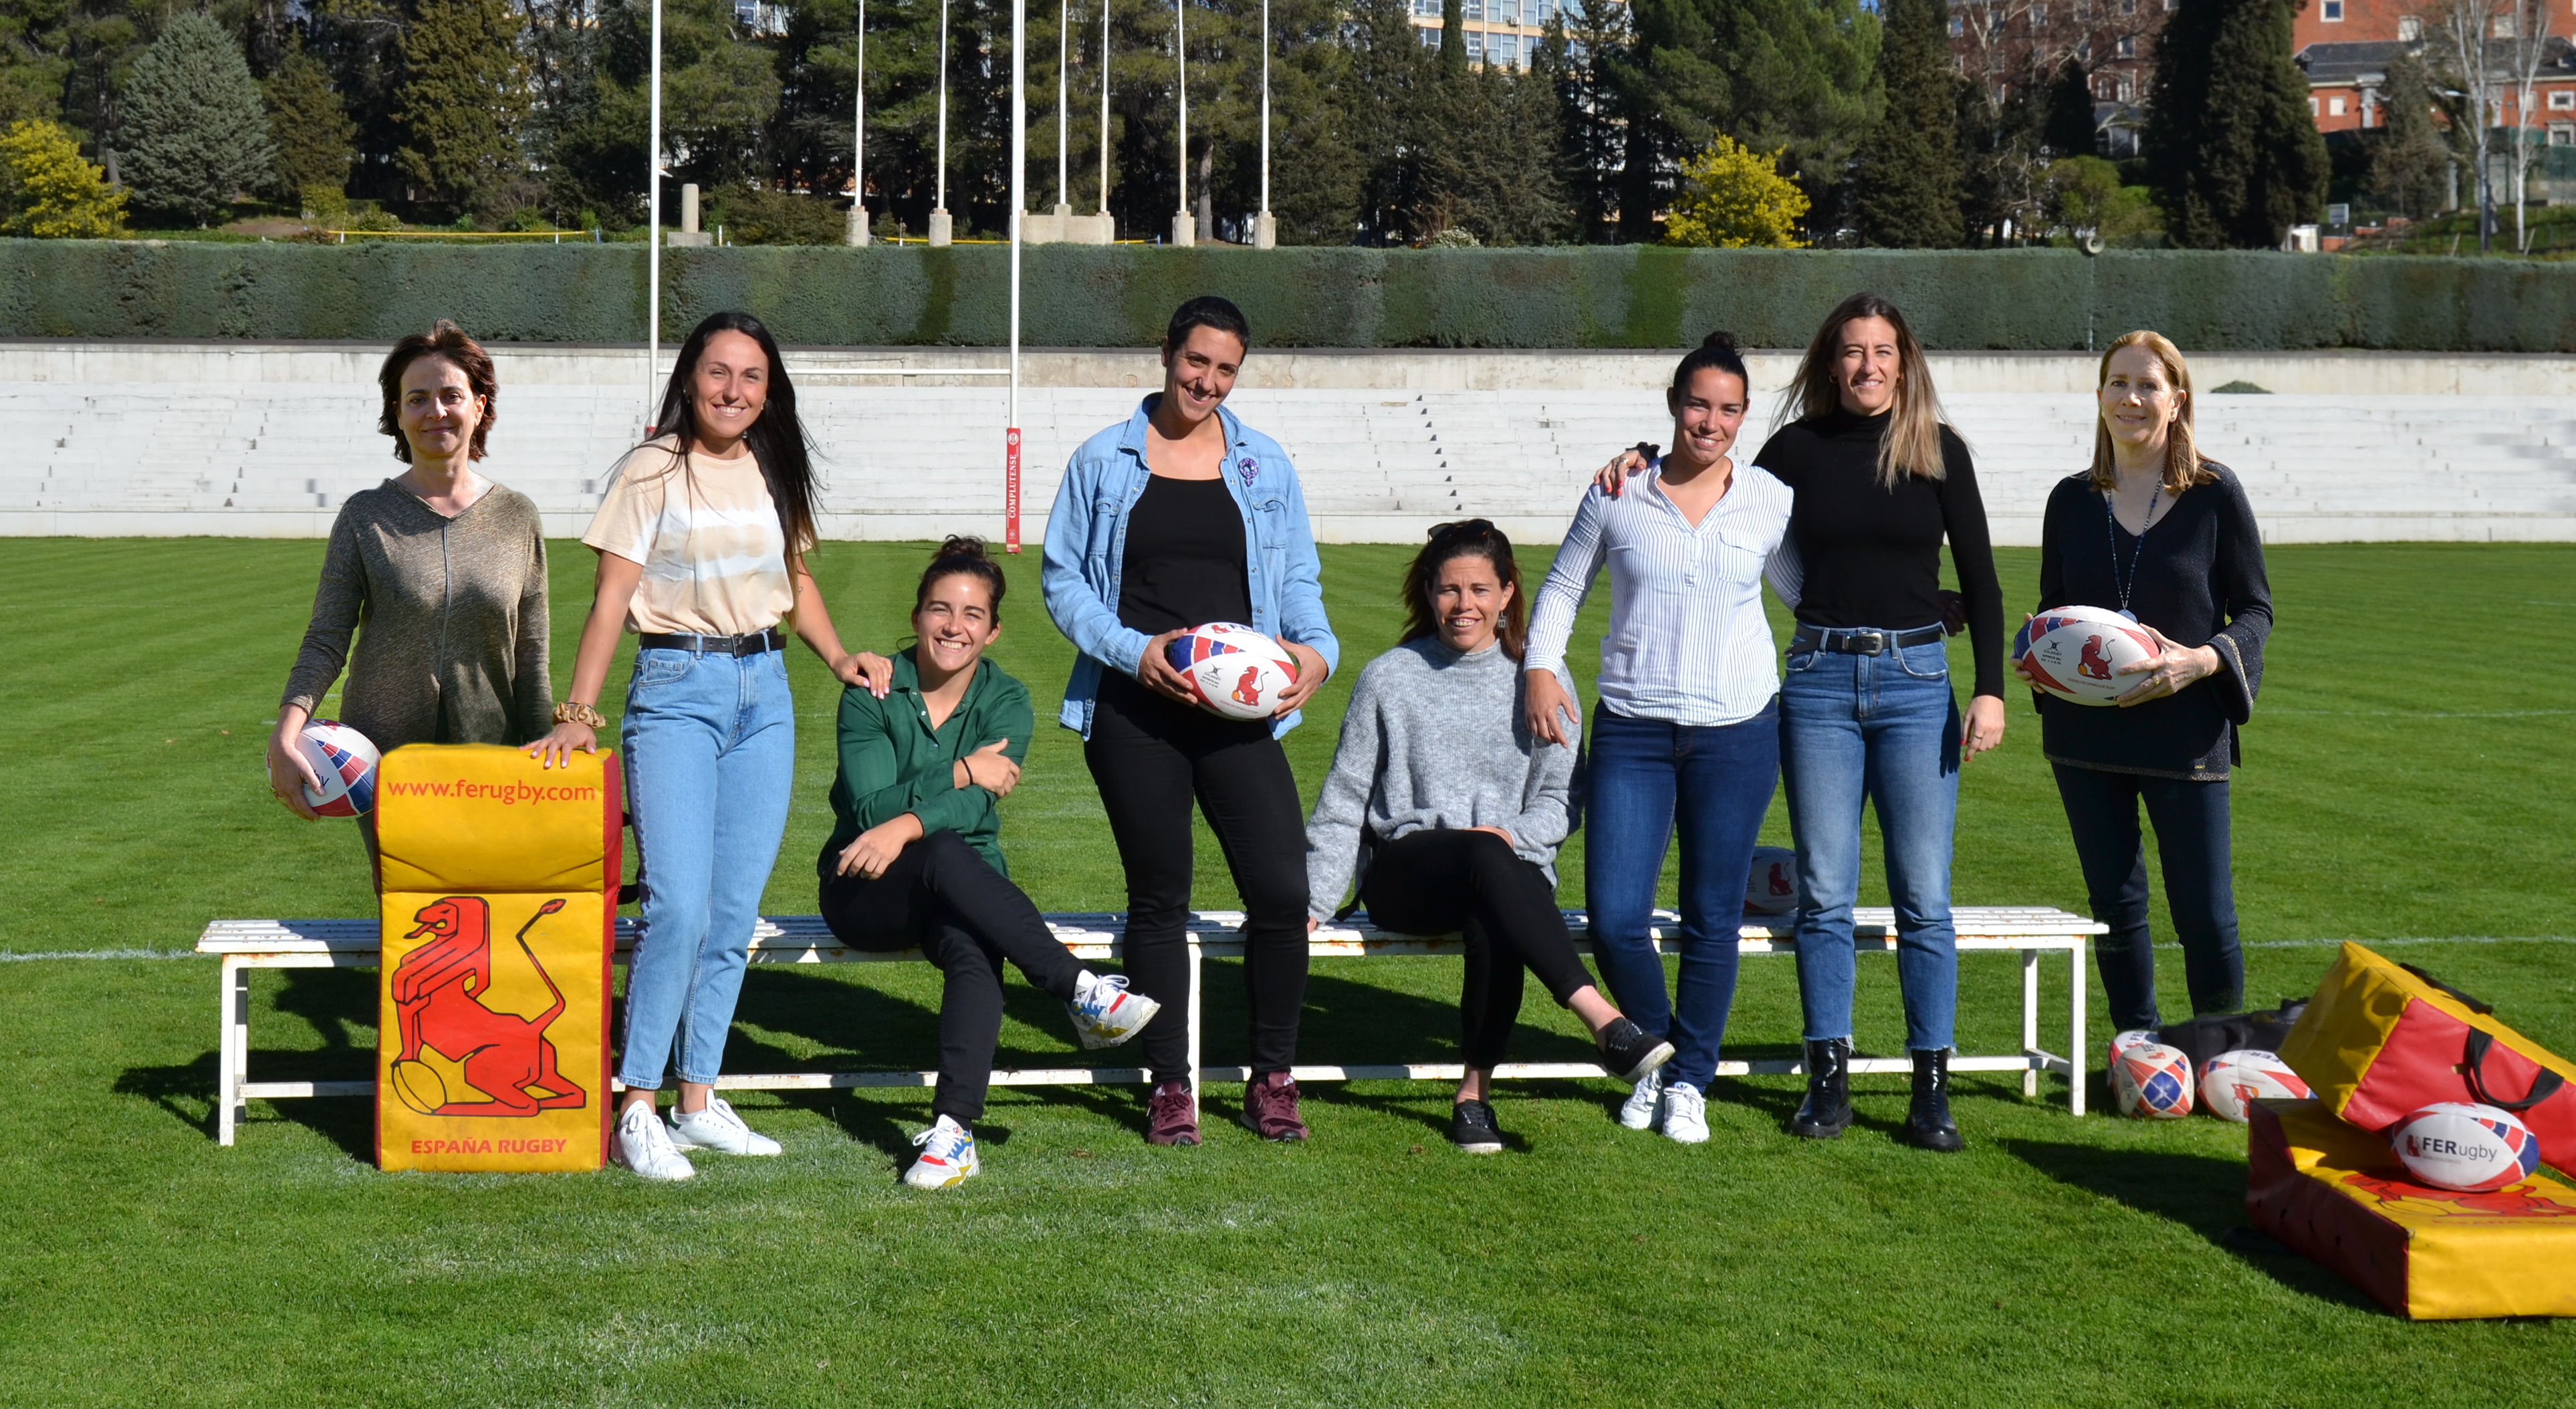 La FER lanza ‘Mujeres en Rugby’: “Somos mujeres, somos rugby”